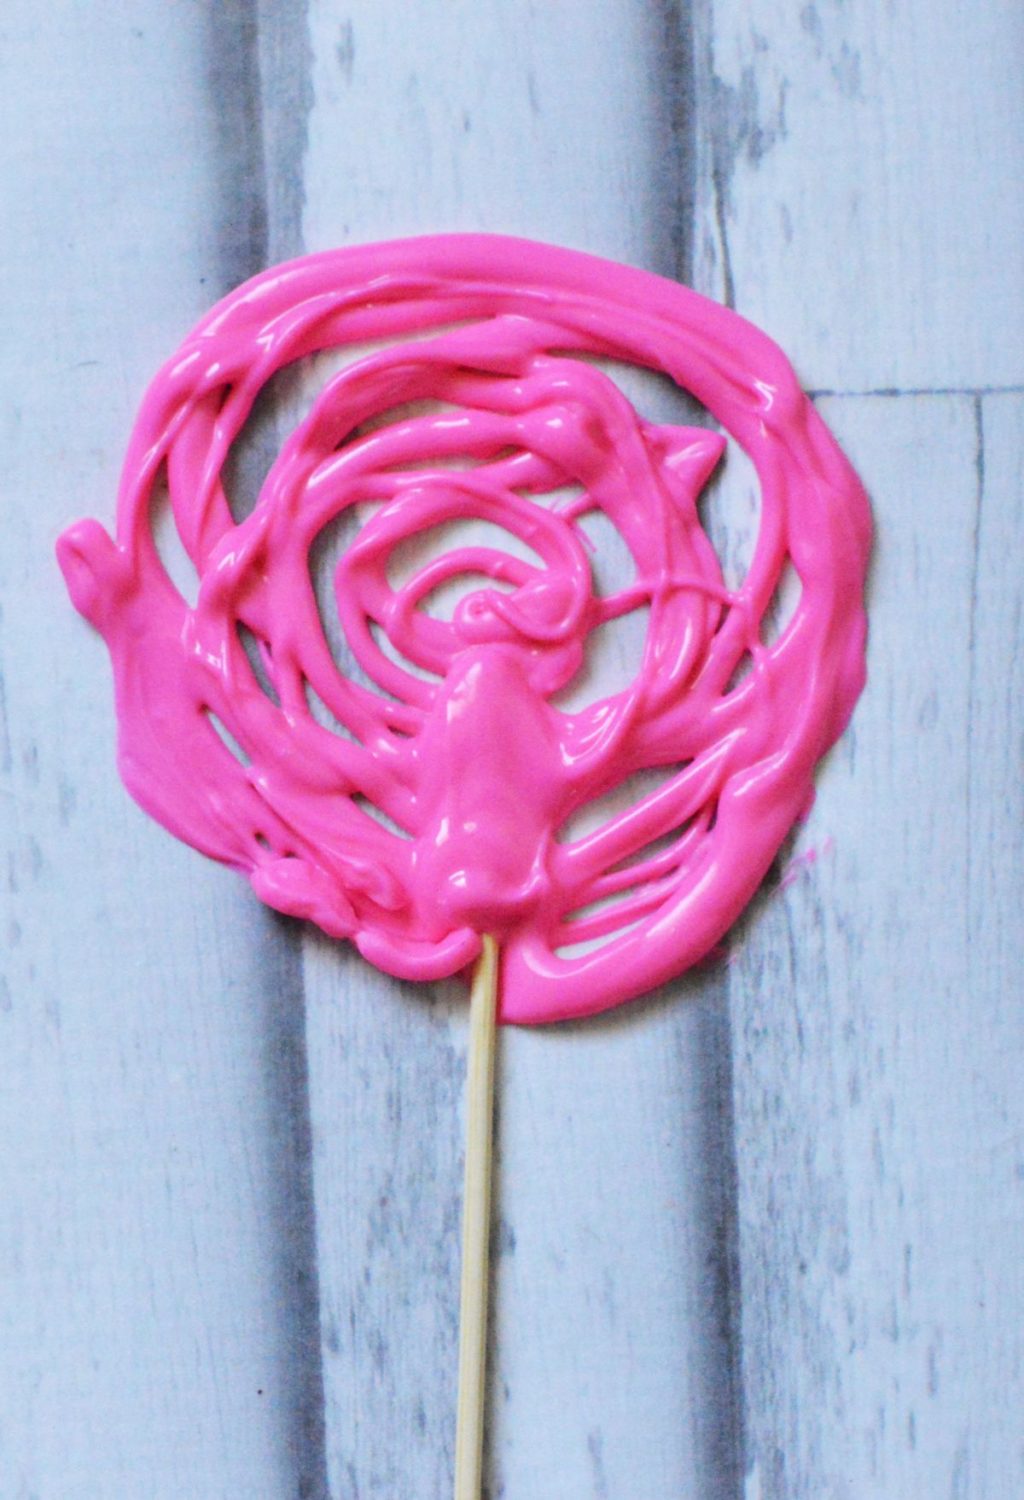 A pink lollipop on a wooden stick.